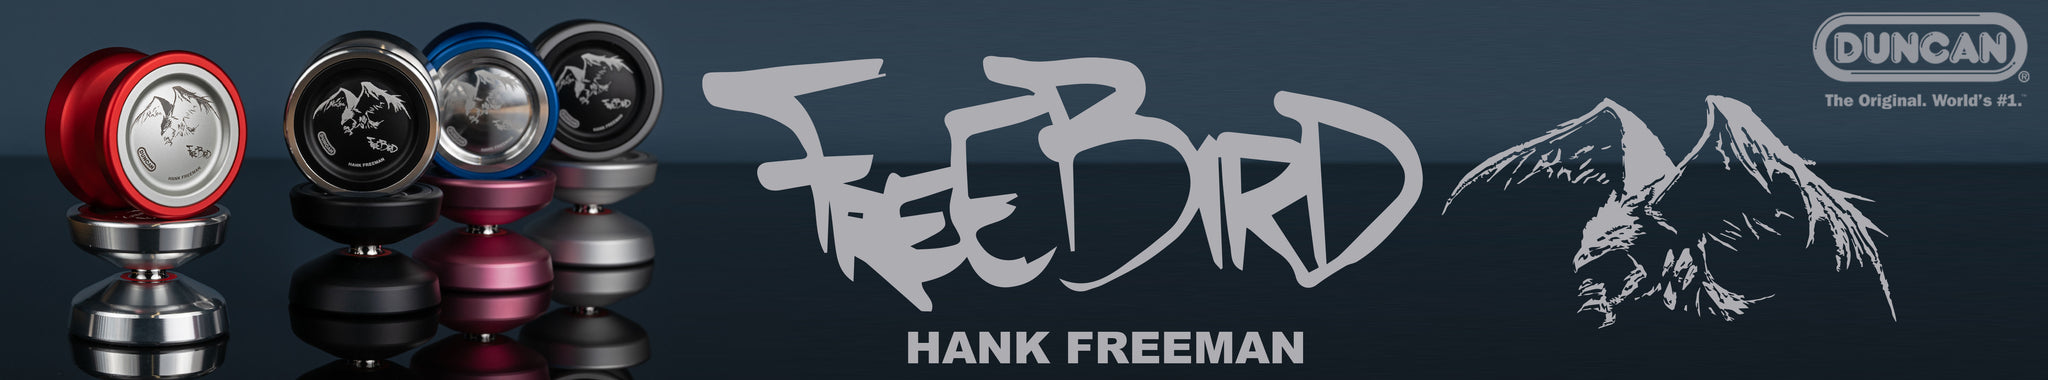 Freebird OG by Duncan